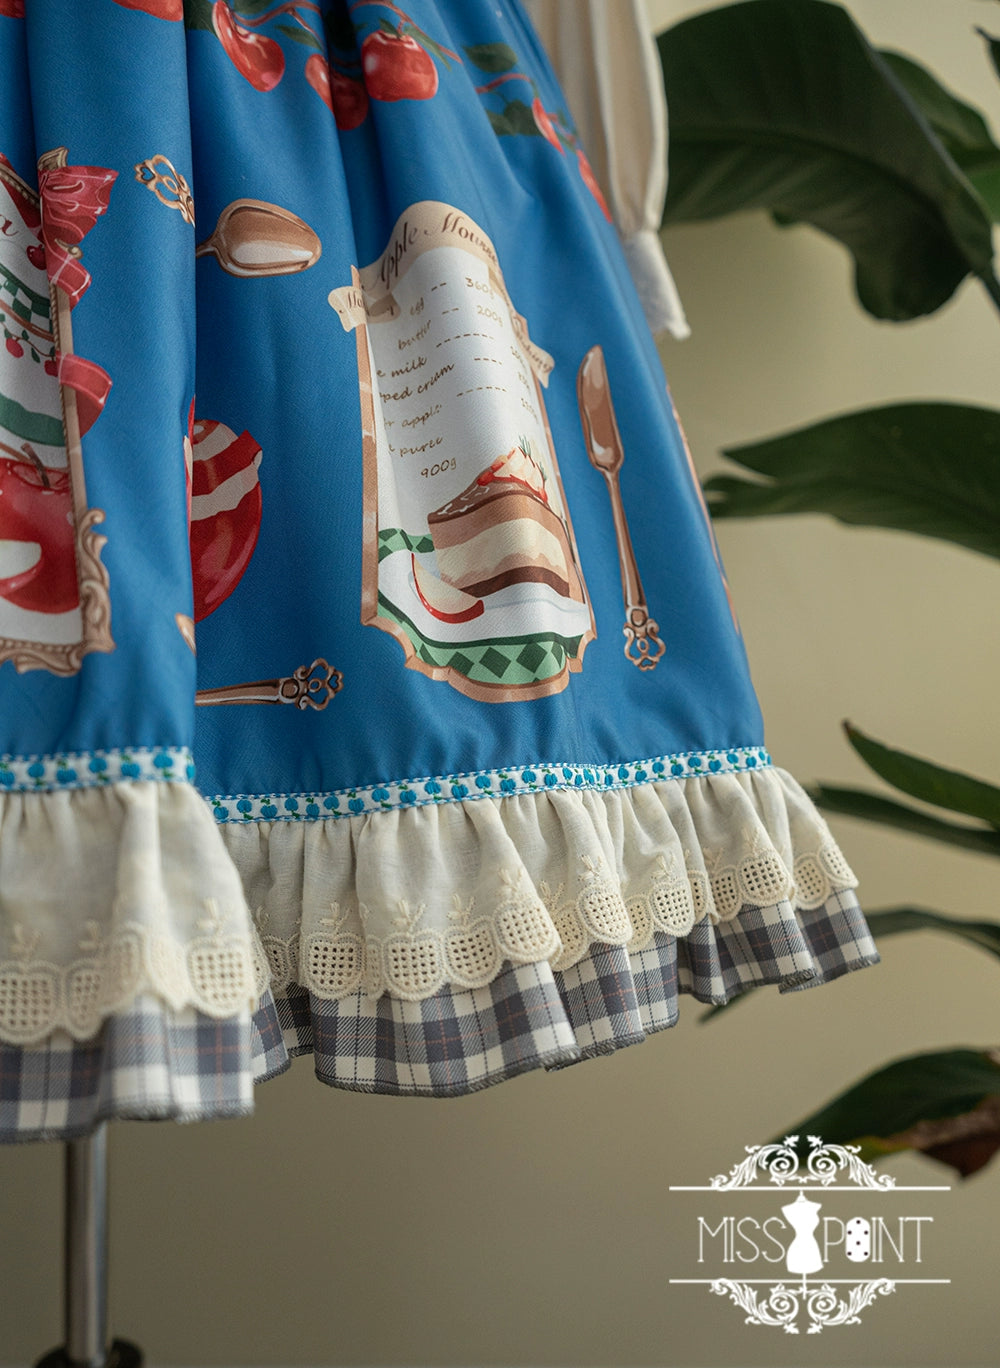 【販売期間終了】Apple Garden バイエルン風ジャンパースカート